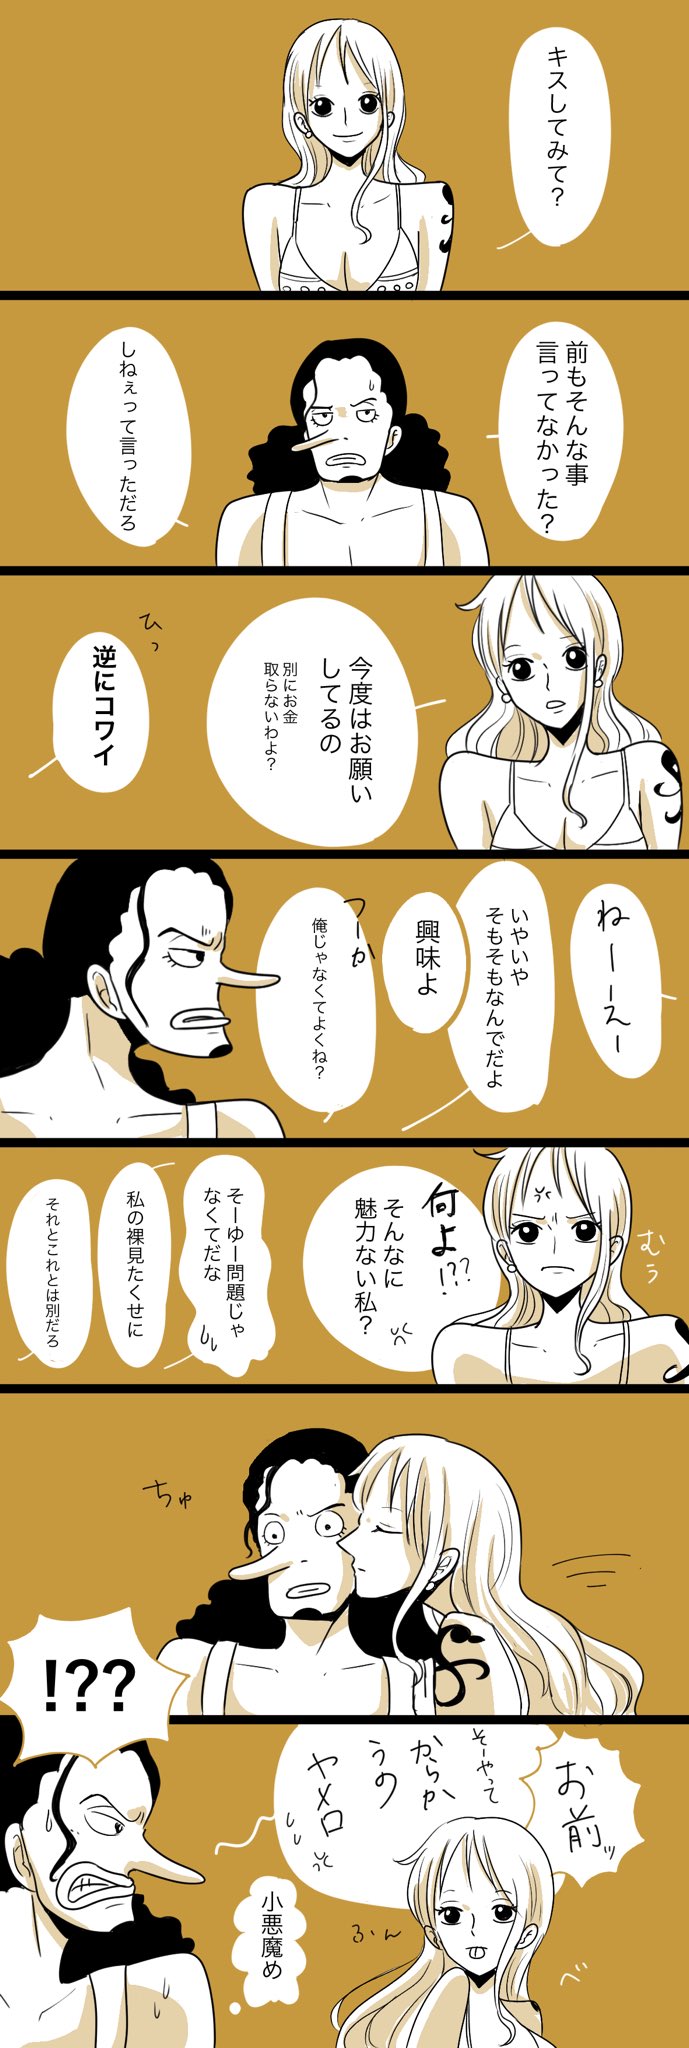 印刷 One Piece イラスト漫画